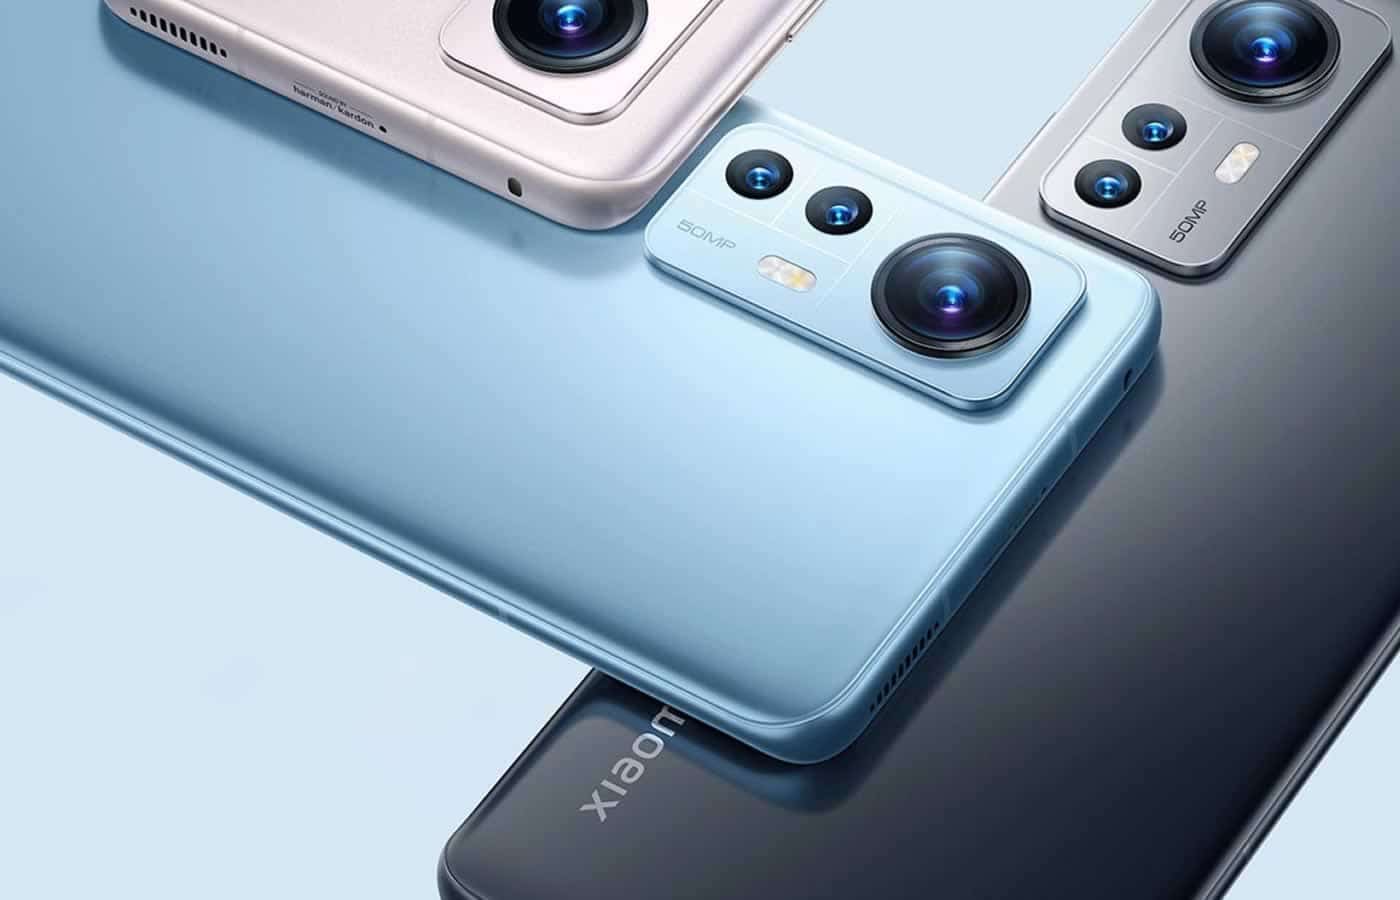 Τα Xiaomi 12, 12 Pro & 12X είναι πλέον διαθέσιμα παγκοσμίως, με ένα 12 Ultra να κυκλοφορεί αργότερα φέτος με μια εντελώς νέα κάμερα Leica.